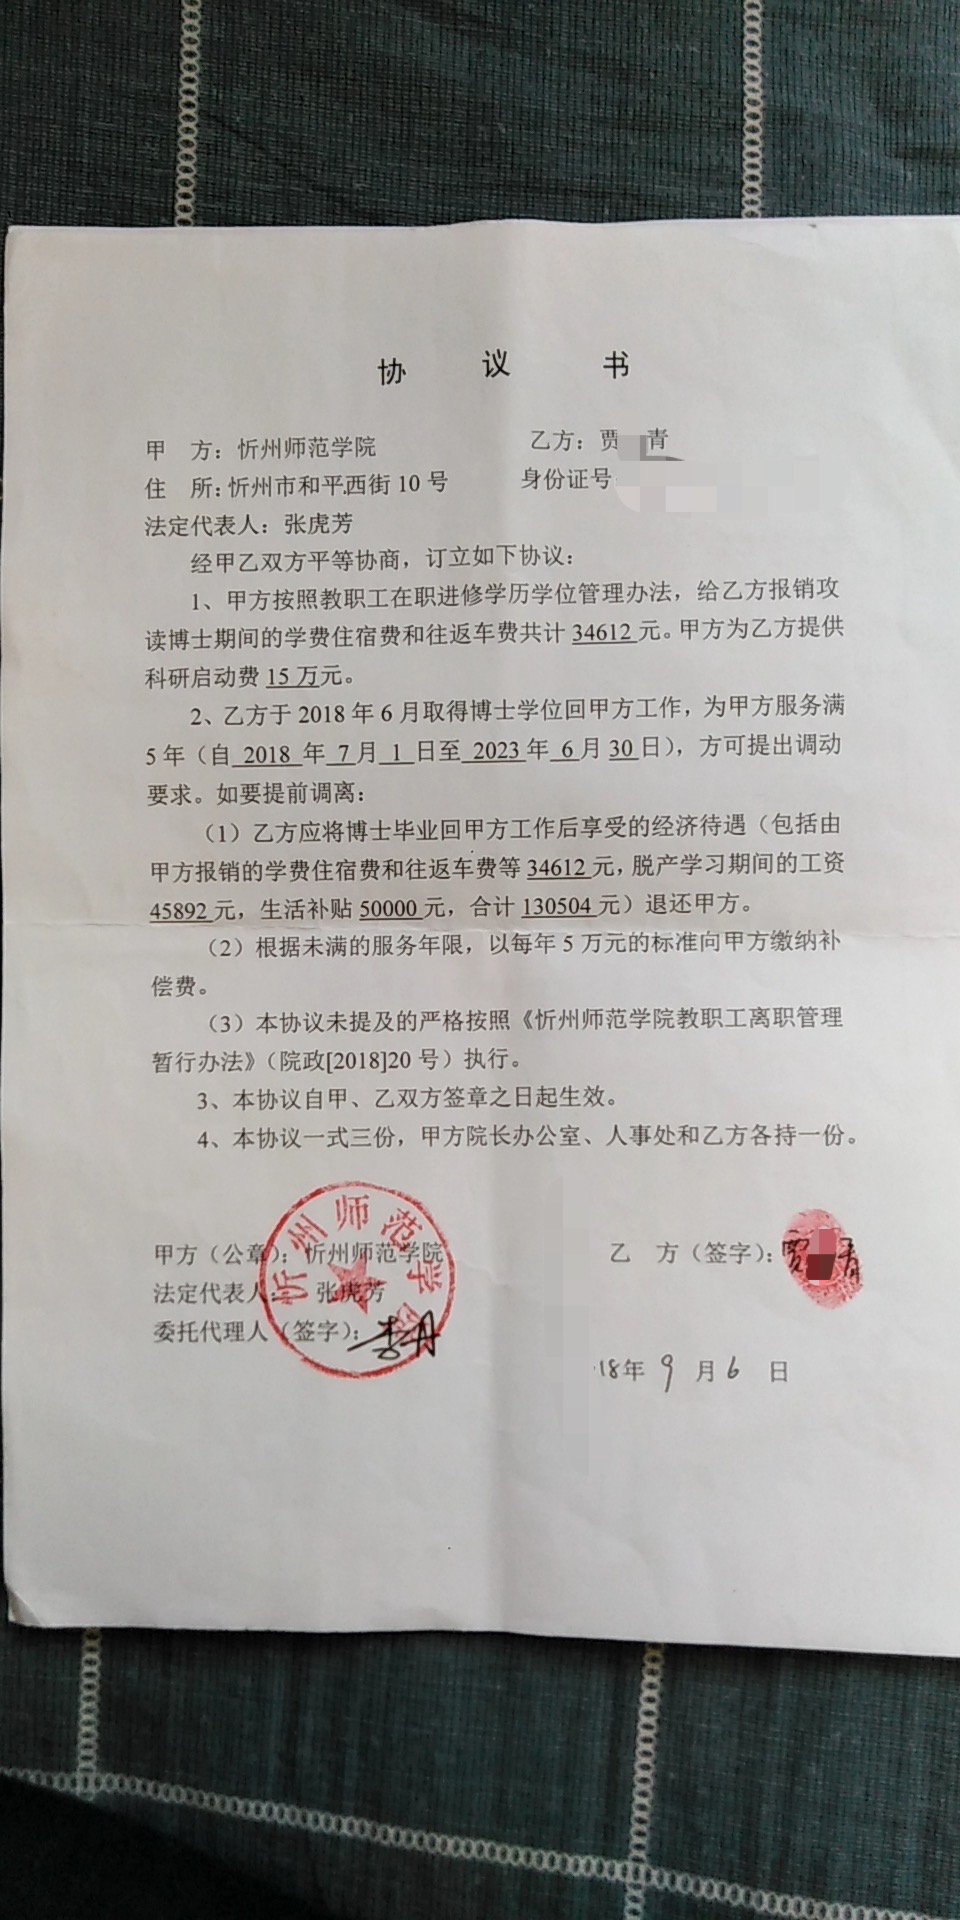  贾某青与忻州师范学院签订的《协议书》。